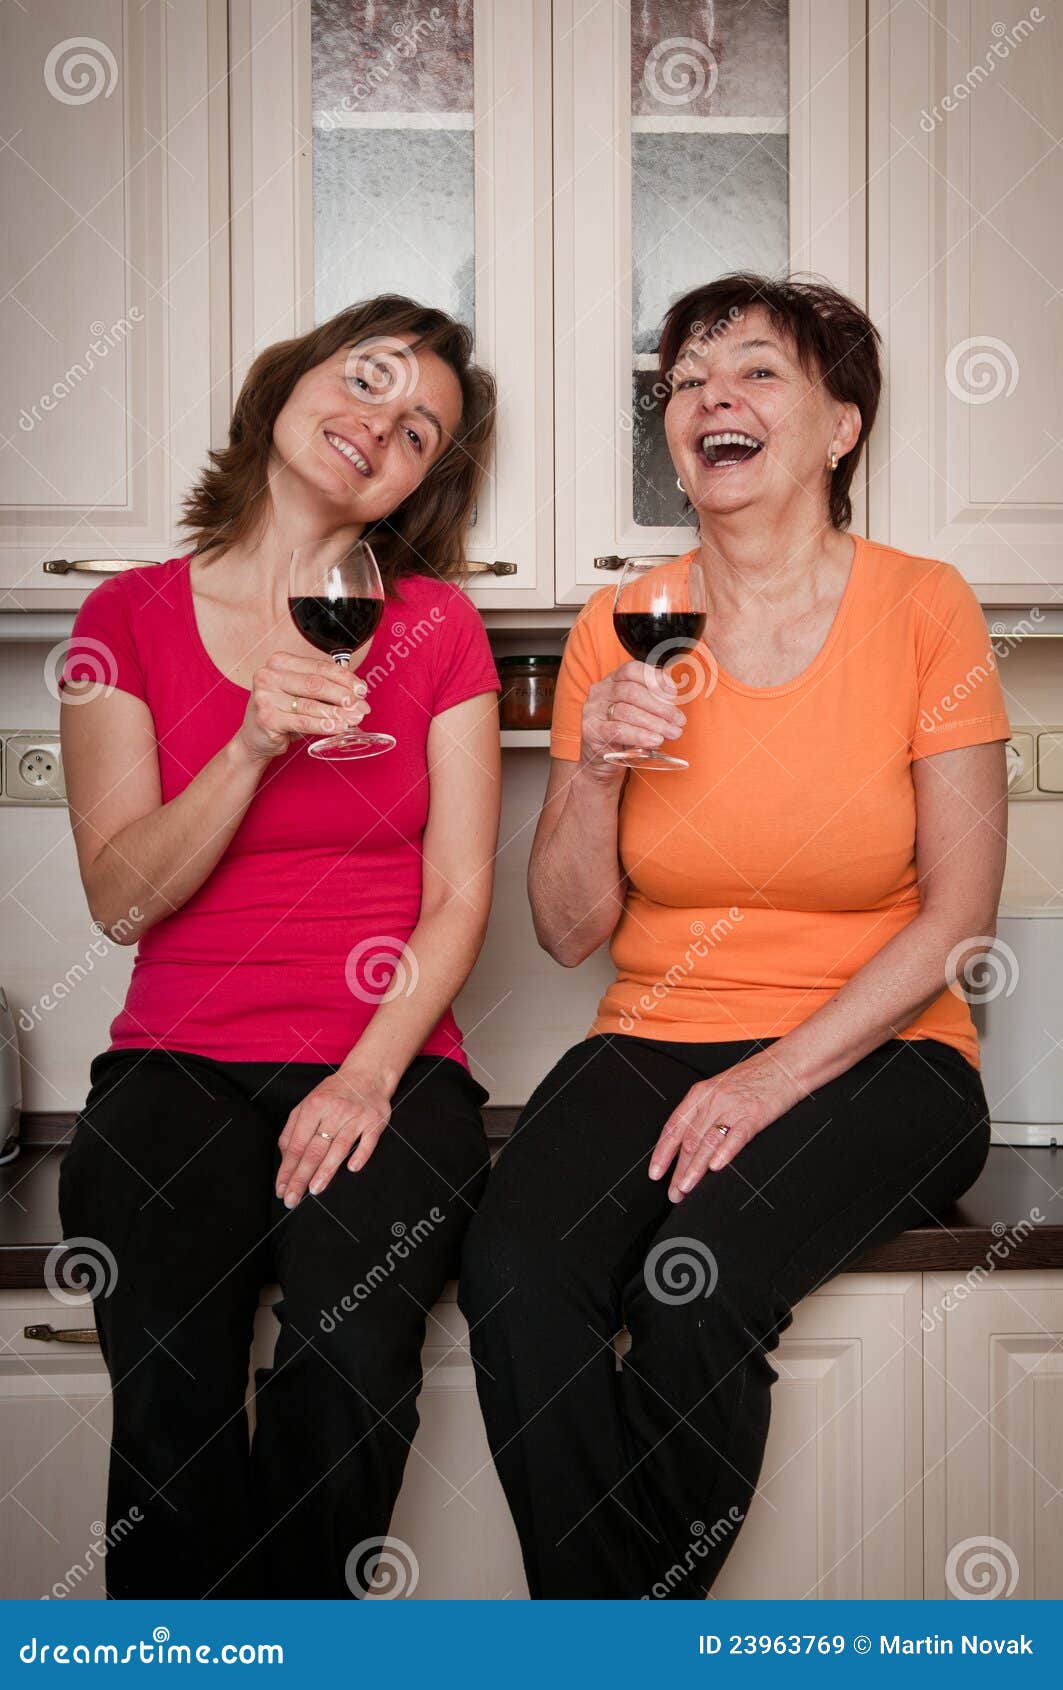 Мамы пьют вино. Мать выпивает с дочерью. Мама пьет вино. Мама и дочь пьют вино. Мама и дочь курильщицы.